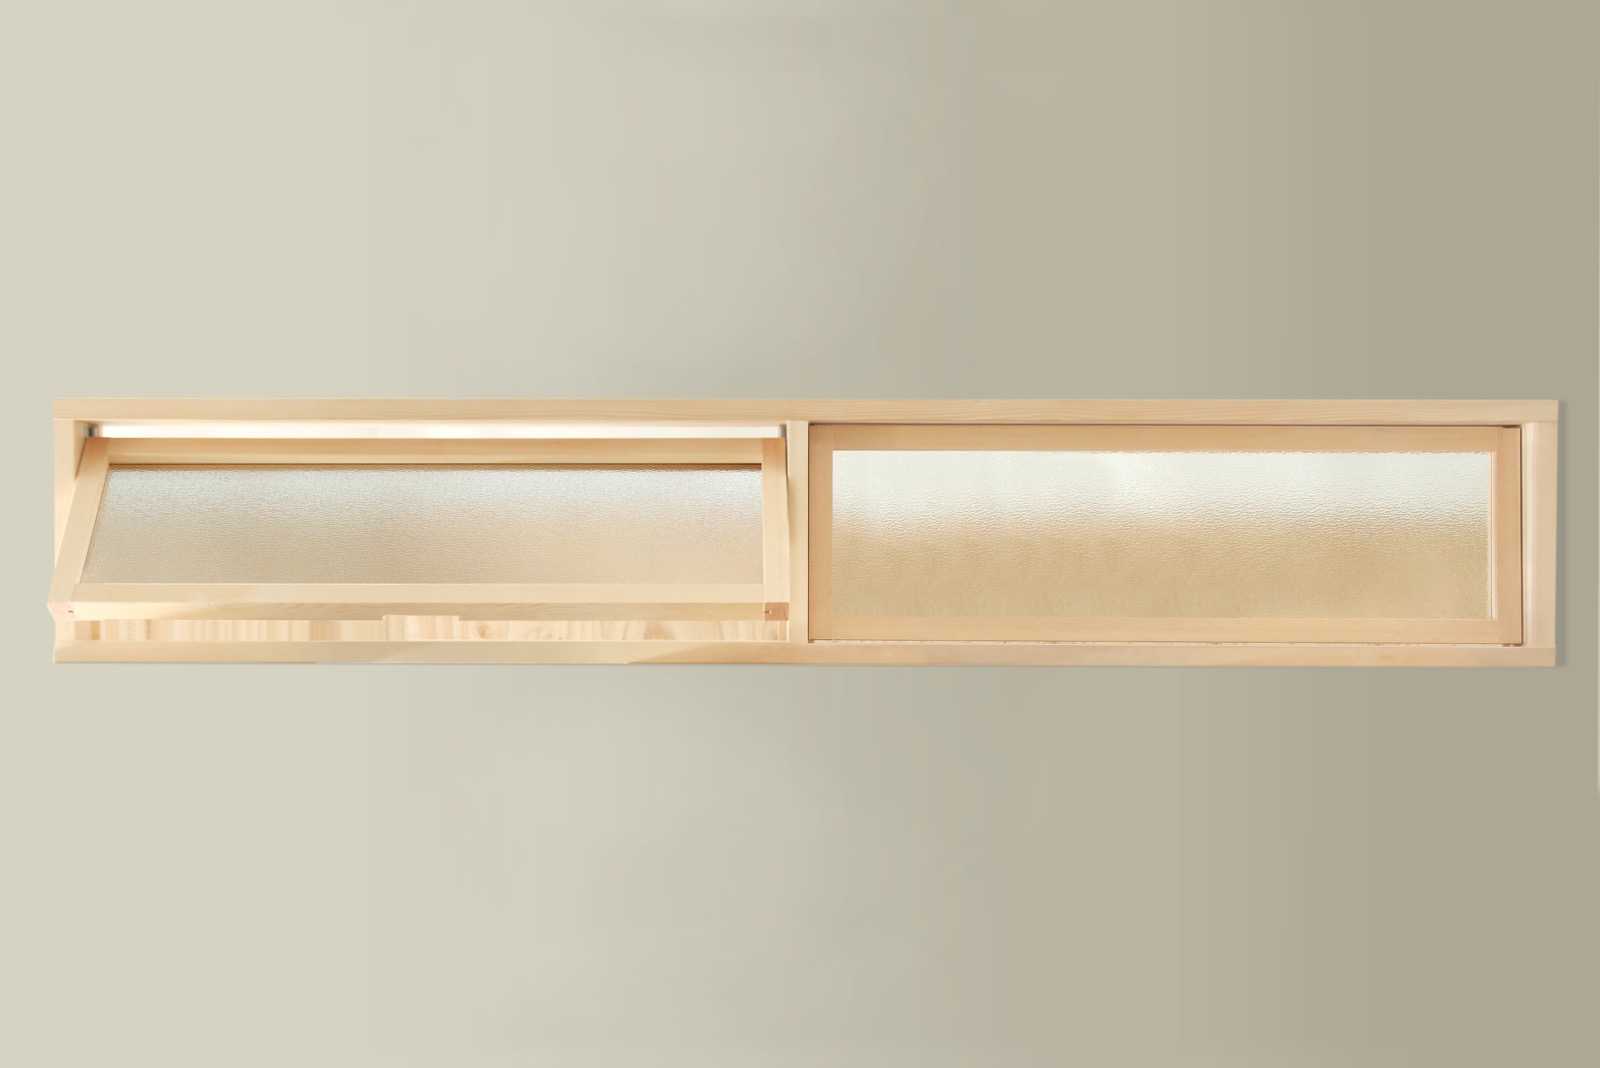 木製室内窓 横長2連 押し出しタイプ DW-DR008-04-G164 型板ガラス（梨地模様）は中の様子が分からない程度の透け具合